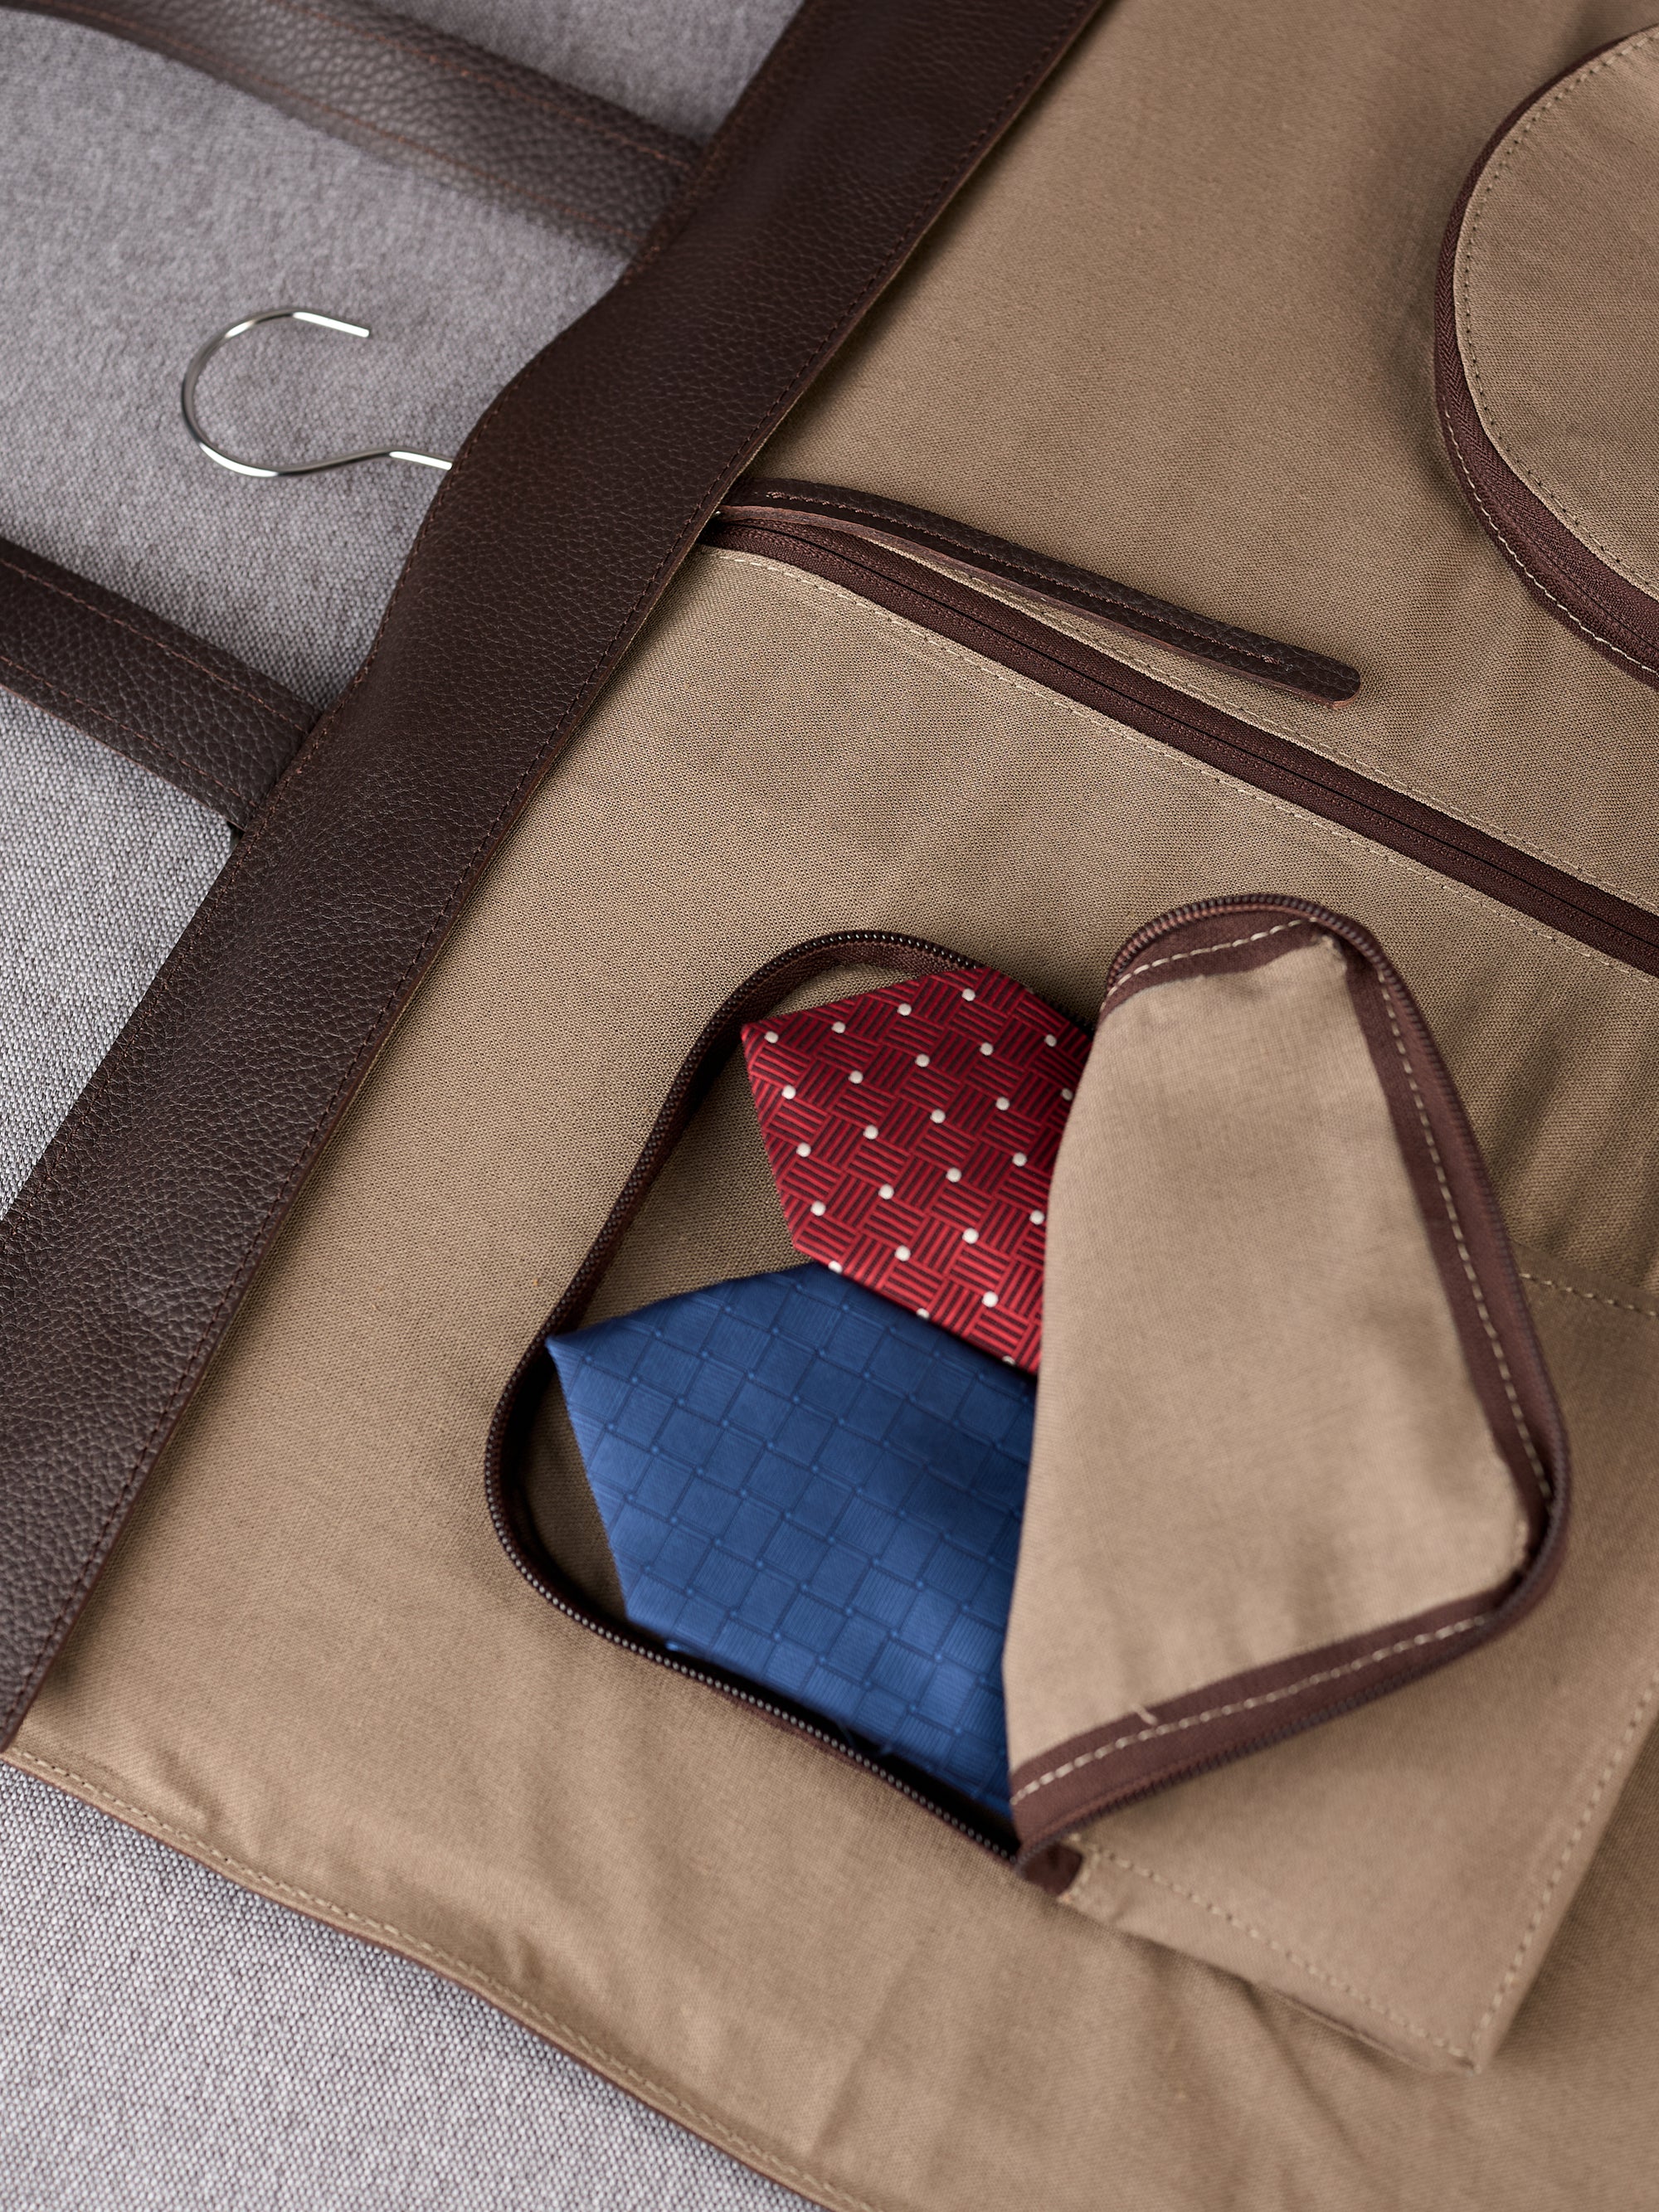 Pocket for ties. Monogrammed Garment Bag Dark Brown by Capra Leather